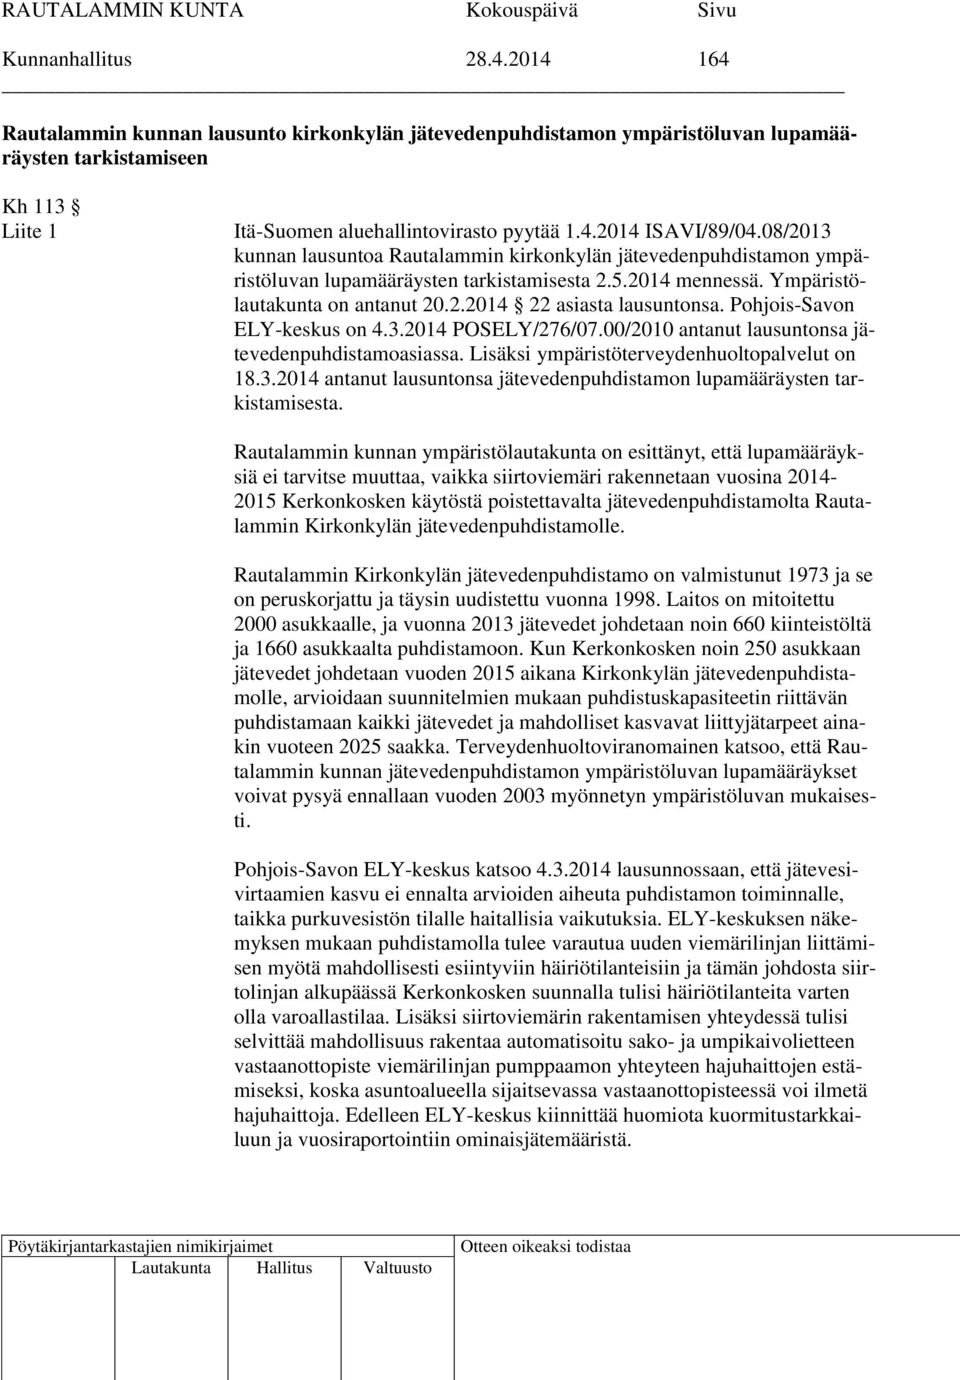 Pohjois-Savon ELY-keskus on 4.3.2014 POSELY/276/07.00/2010 antanut lausuntonsa jätevedenpuhdistamoasiassa. Lisäksi ympäristöterveydenhuoltopalvelut on 18.3.2014 antanut lausuntonsa jätevedenpuhdistamon lupamääräysten tarkistamisesta.